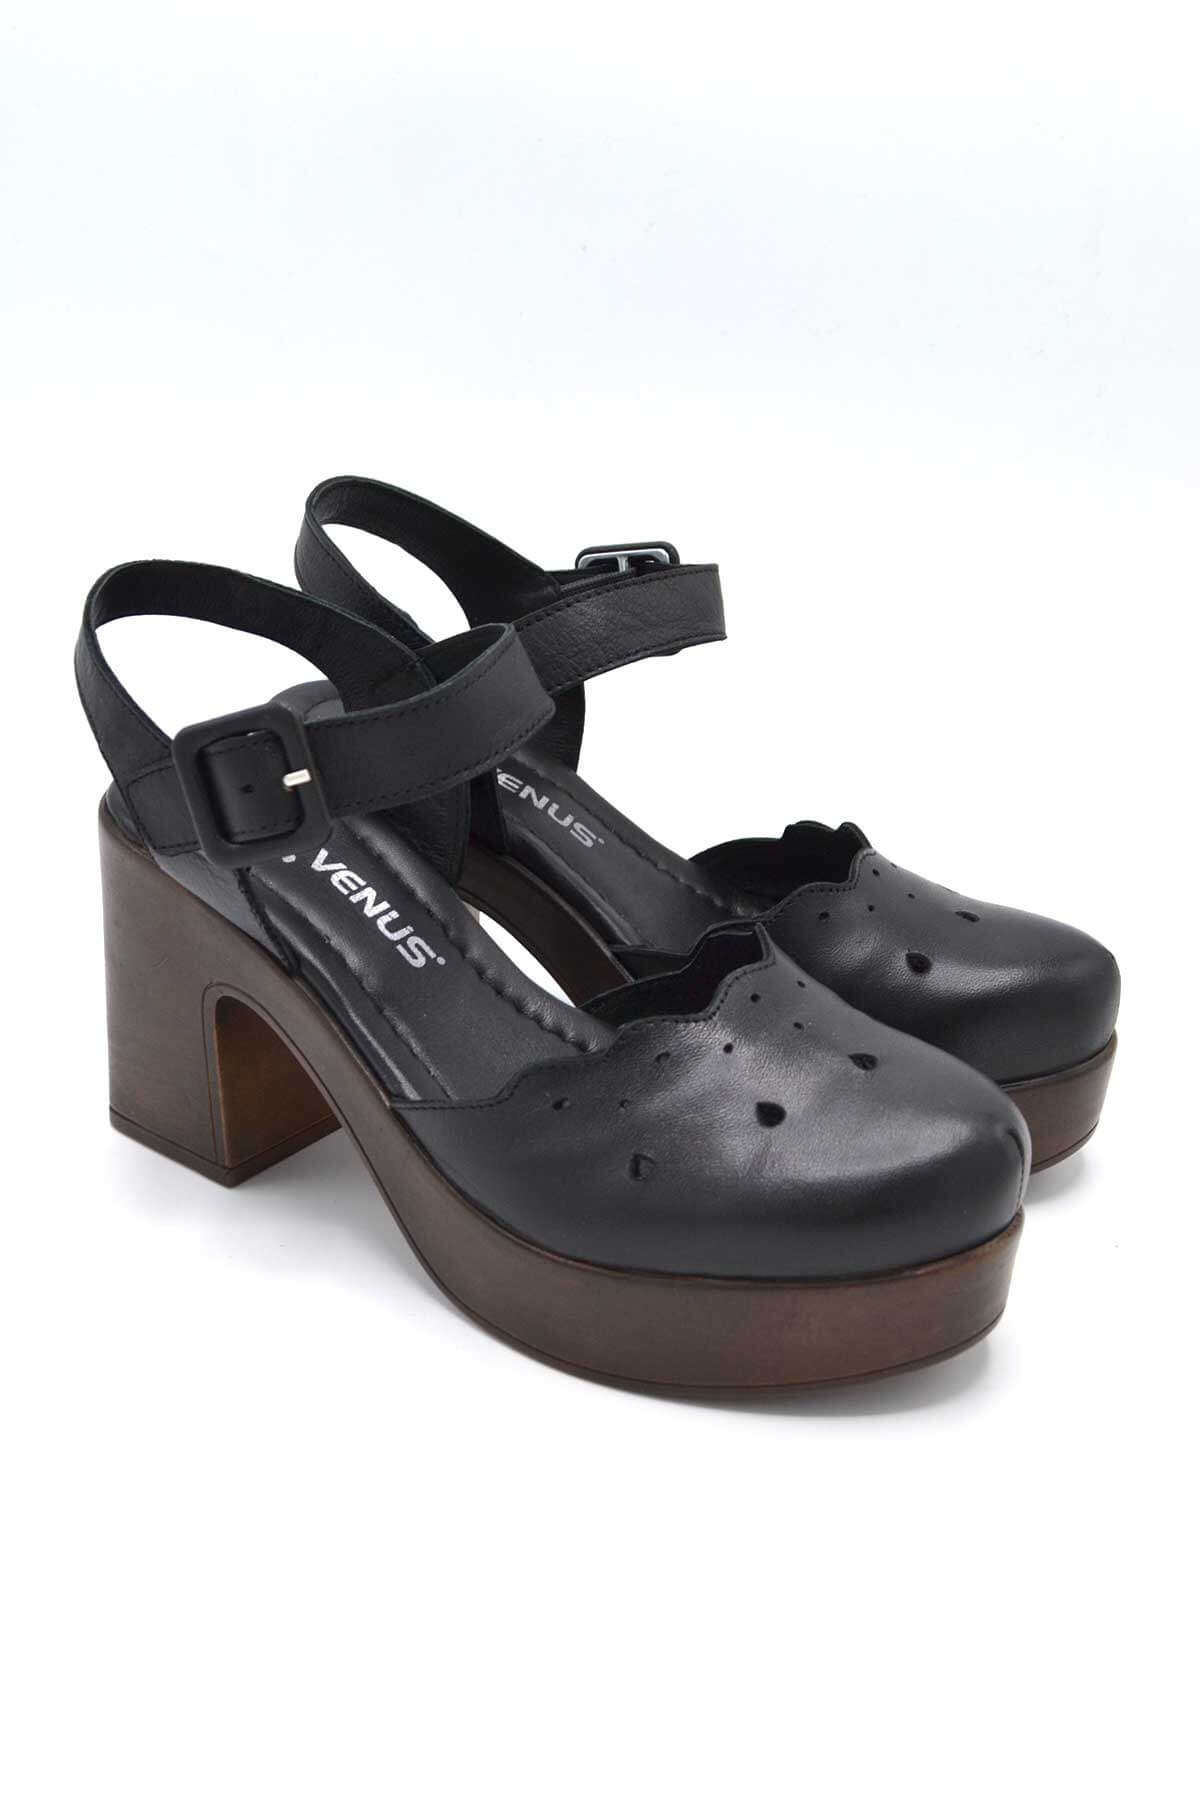 Kadın Apartman Topuk Deri Sandalet Siyah 2217001Y - Thumbnail